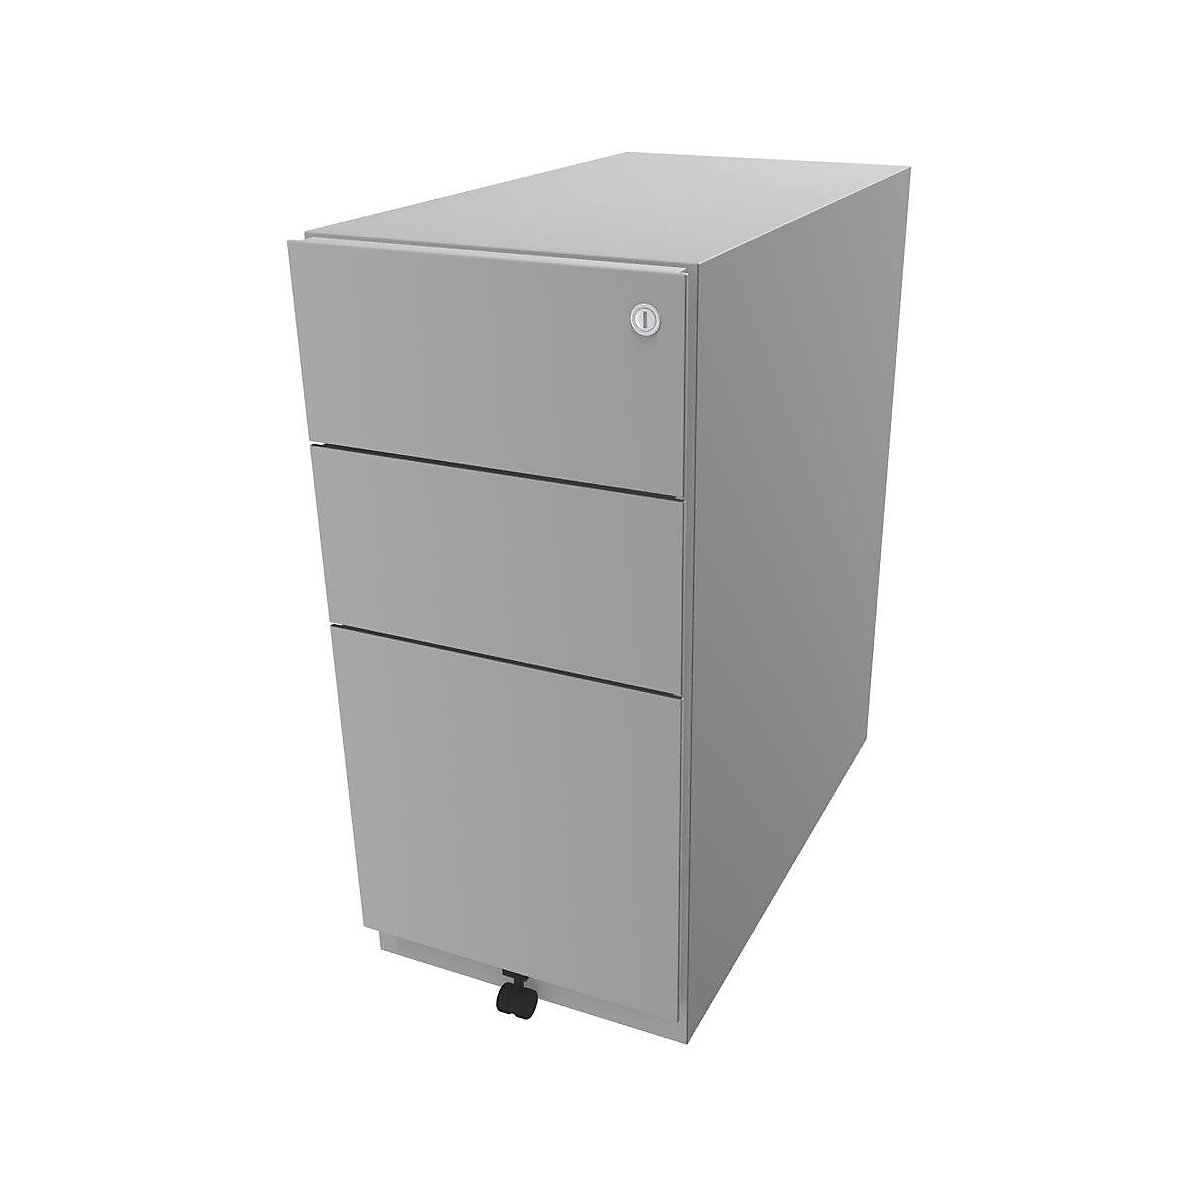 Pojazdný kontajner Note™, s 2 univerzálnymi zásuvkami, 1 závesná registratúra – BISLEY, v x š x h 645 x 300 x 565 mm, svetlošedá-1